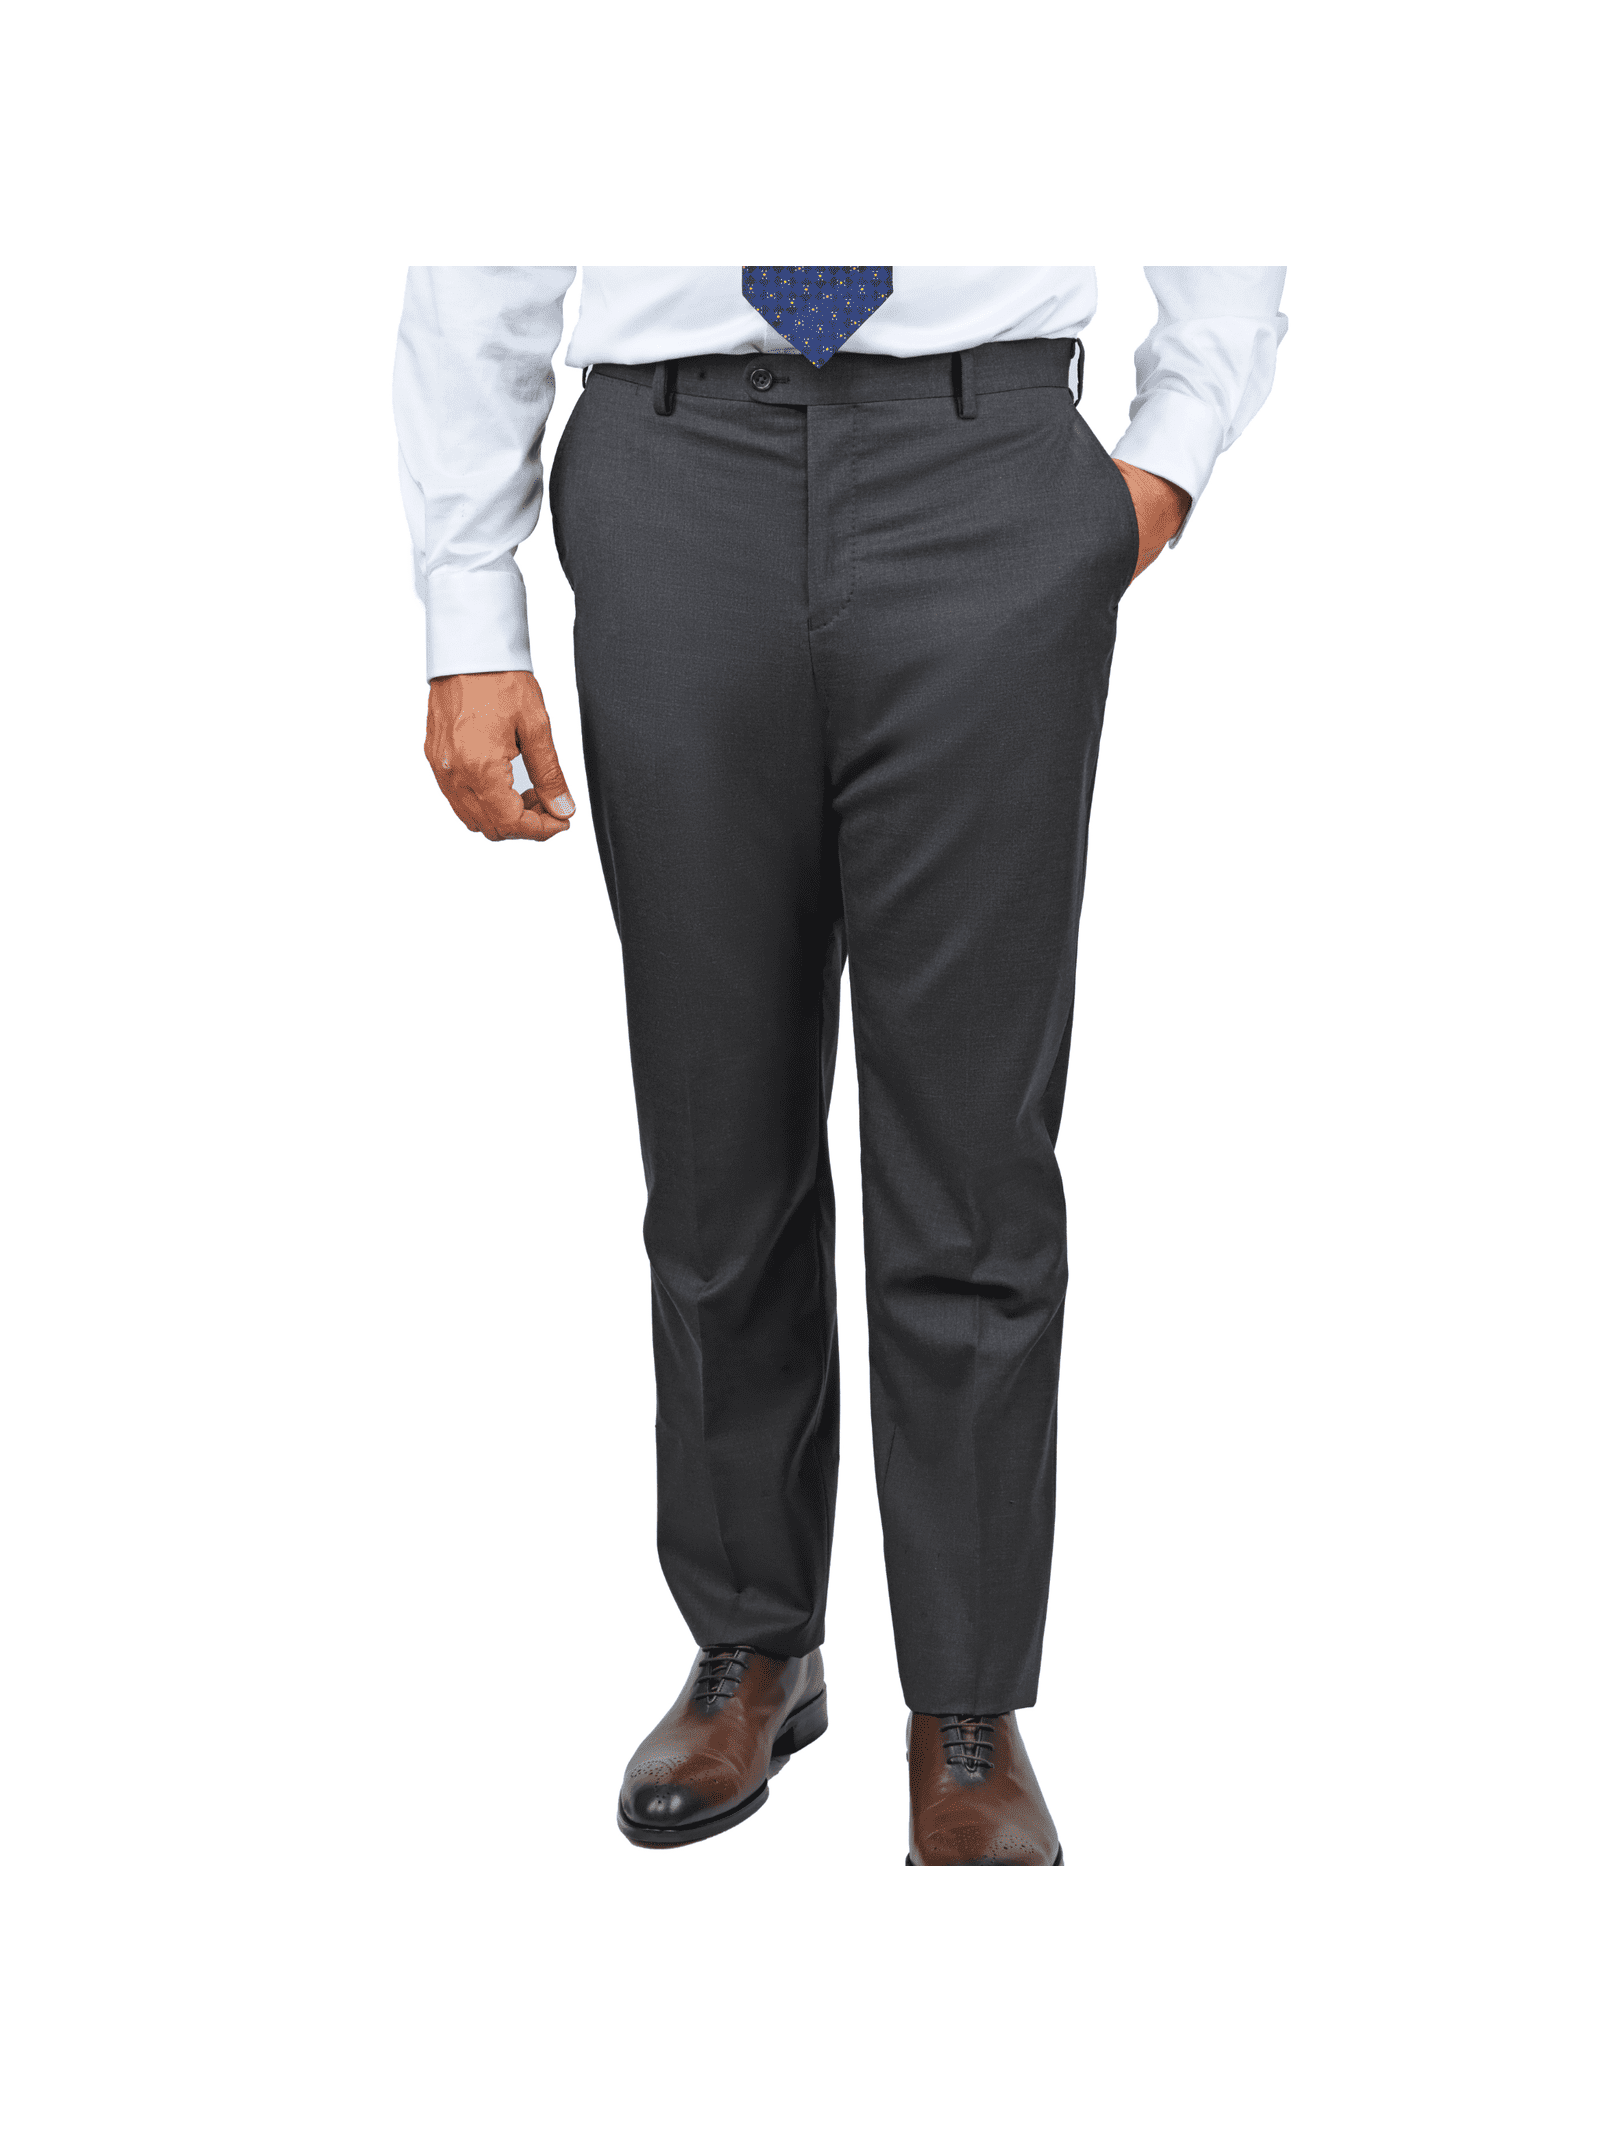 LOUIS VUITTON Cashmere/Wool Pants Size S/M Navy blue ref.1009628 - Joli  Closet